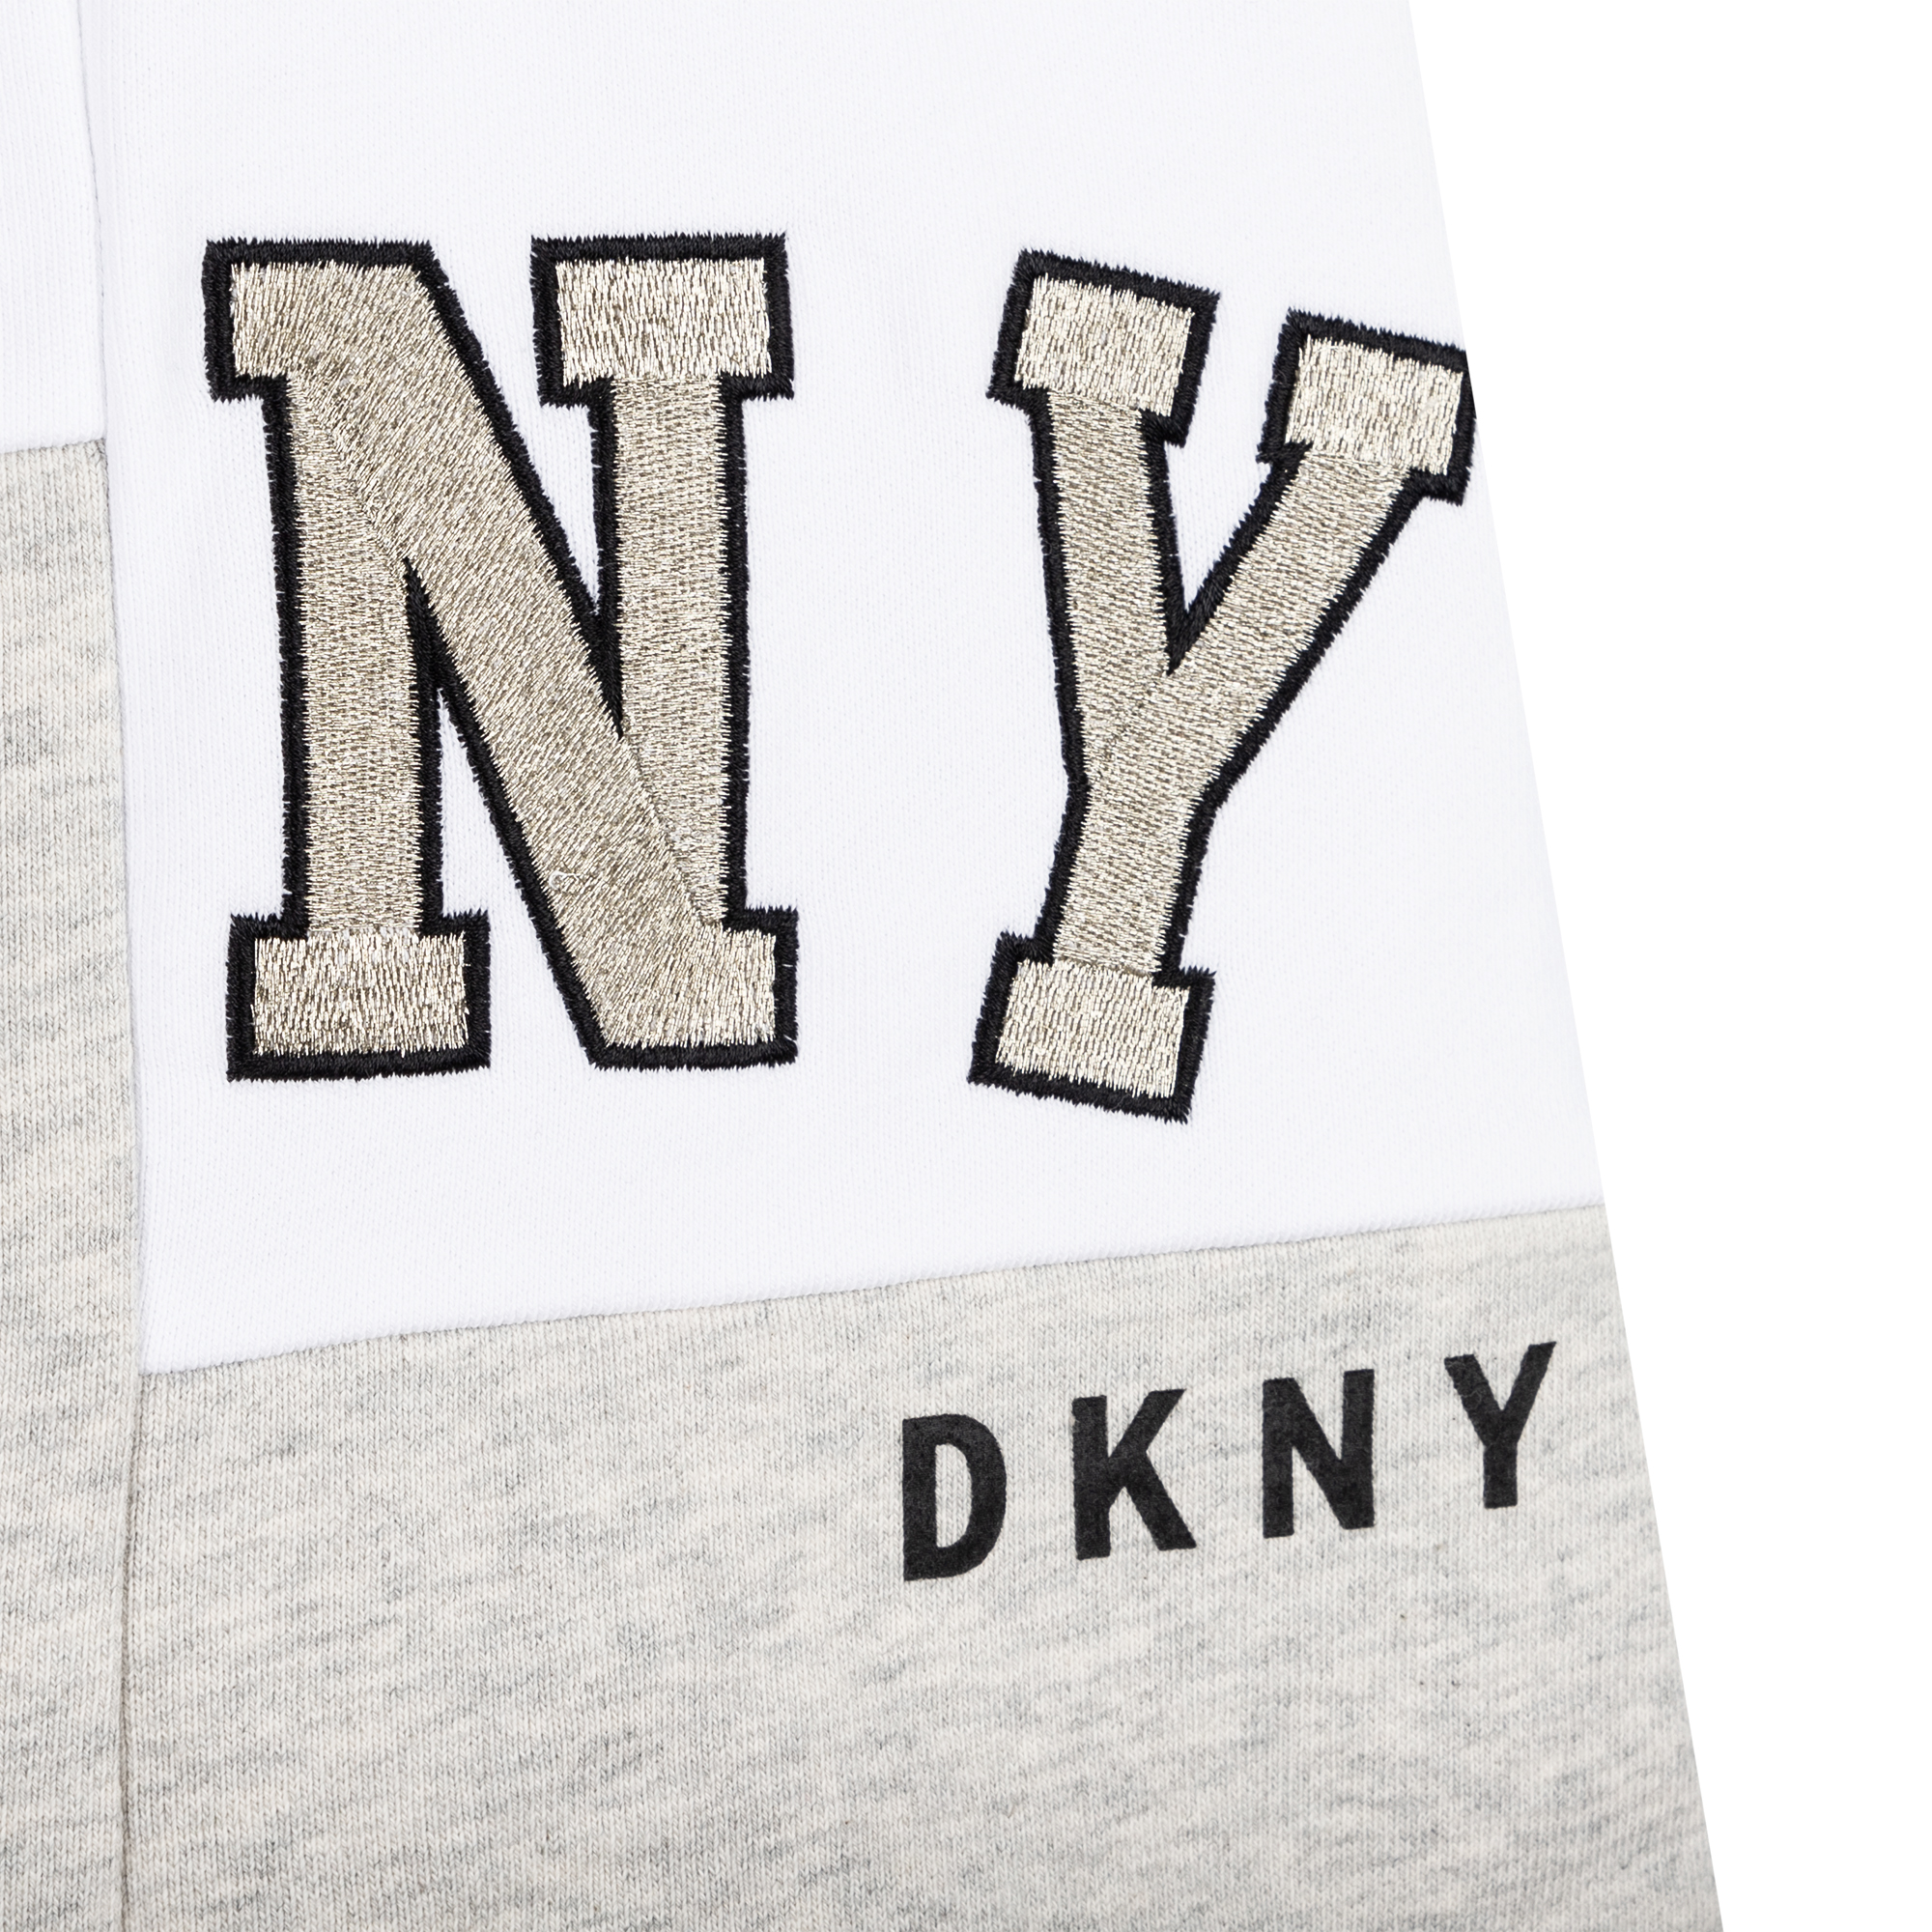 Short fleece skirt DKNY for GIRL